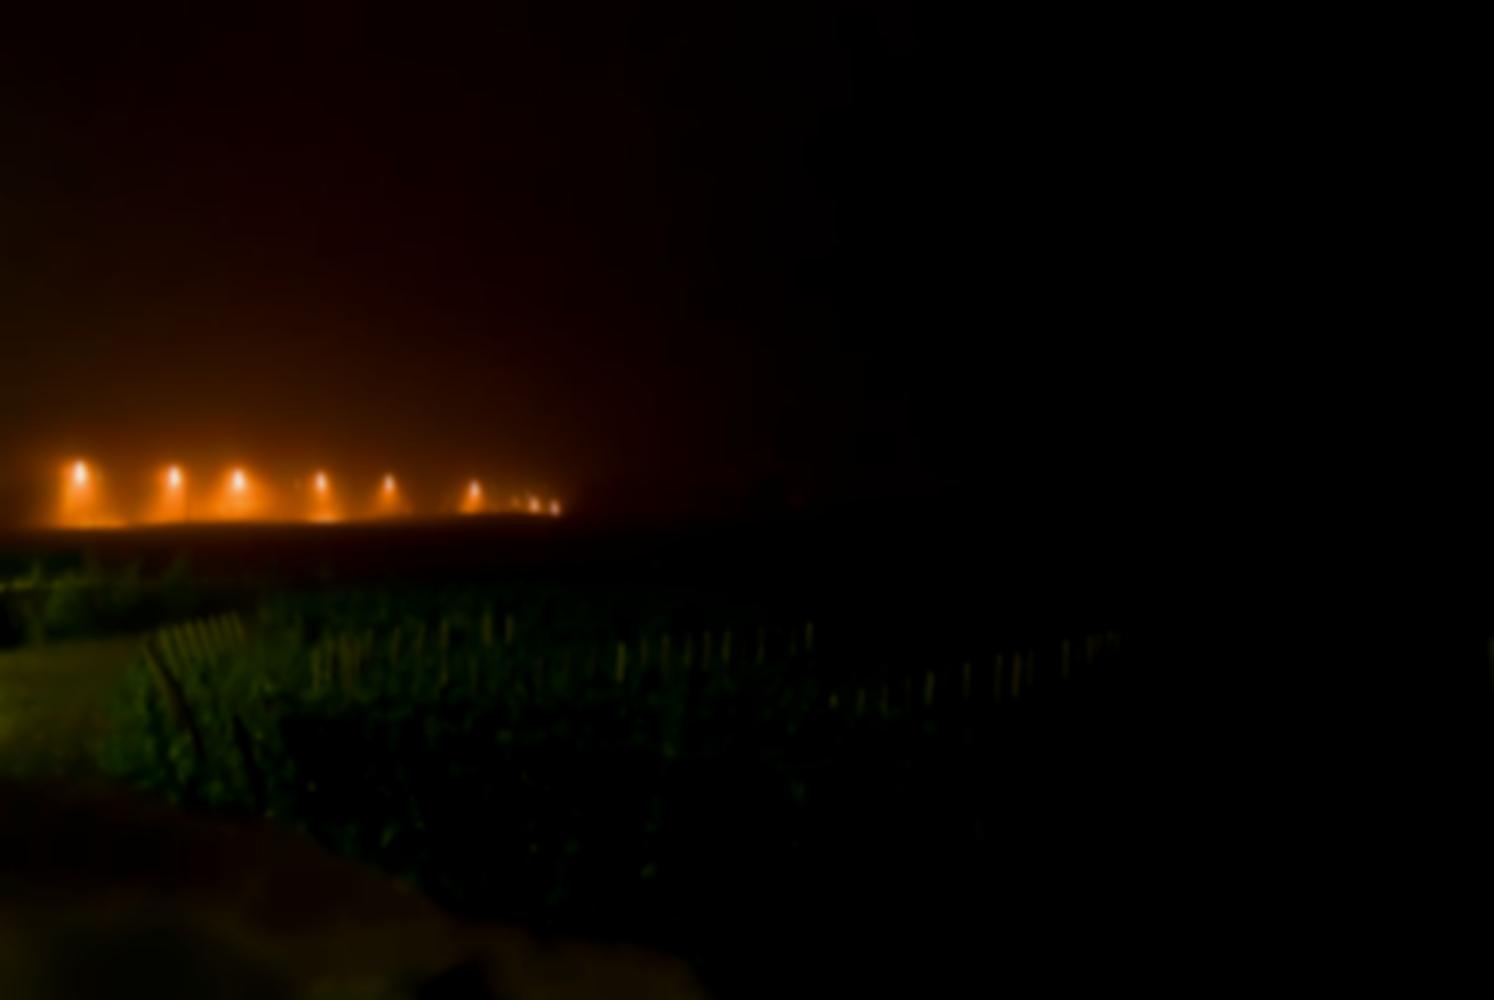 Les vignes de nuit, et au fond un alignement de lumières oranges de réverbères qui se fondent dans la brume. Chassagne-Montrachet, Bourgogne, septembre 2009.